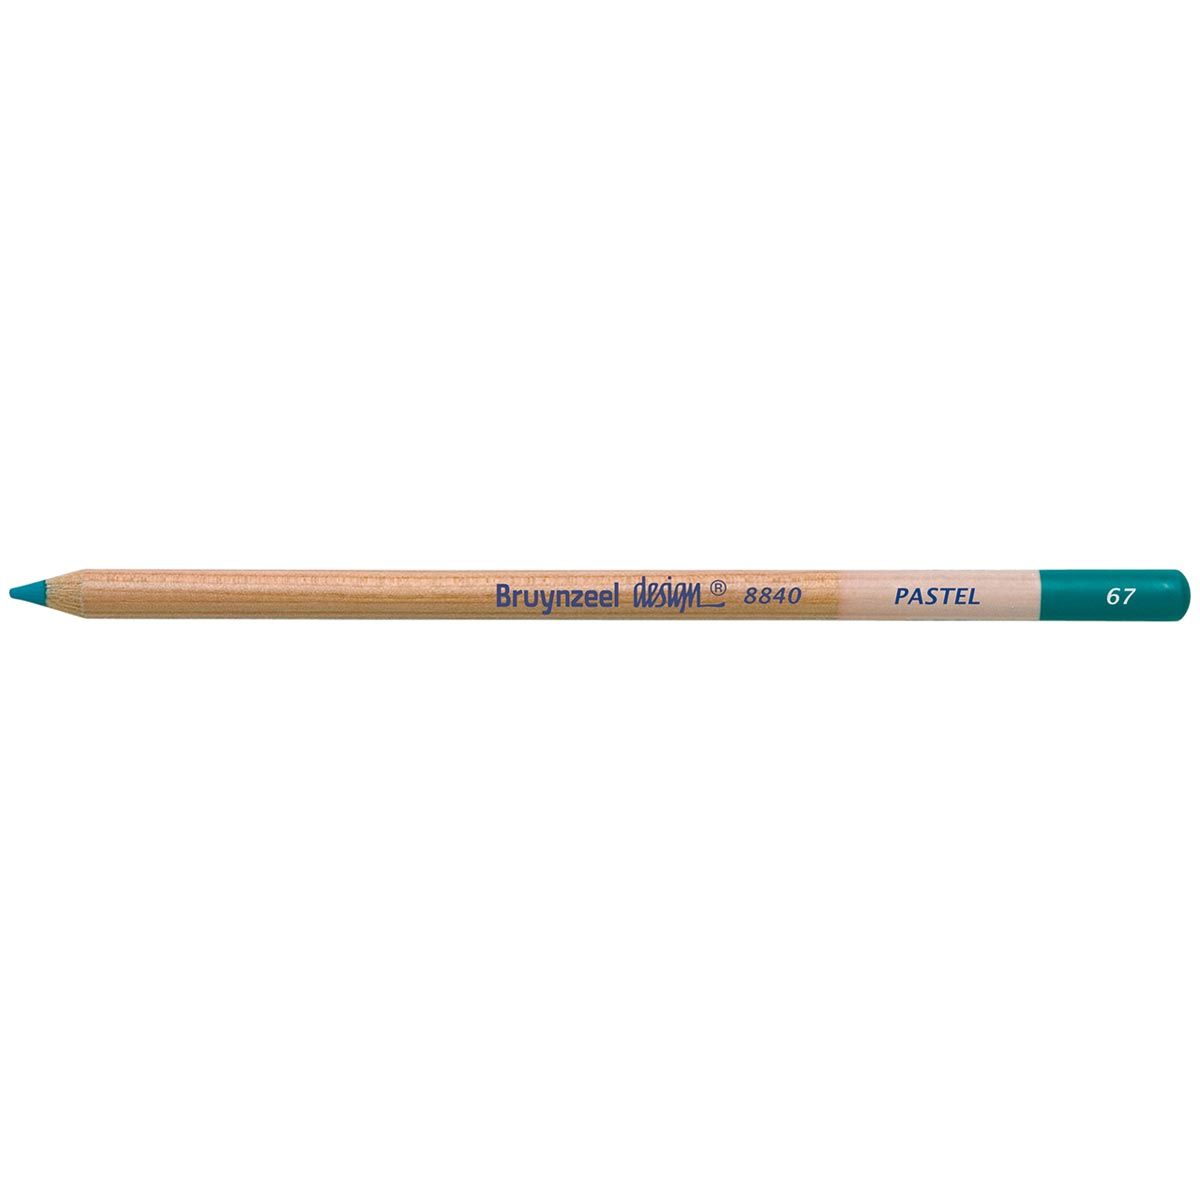 Bruynzeel Design Pastel Pencil - Green Blue 67